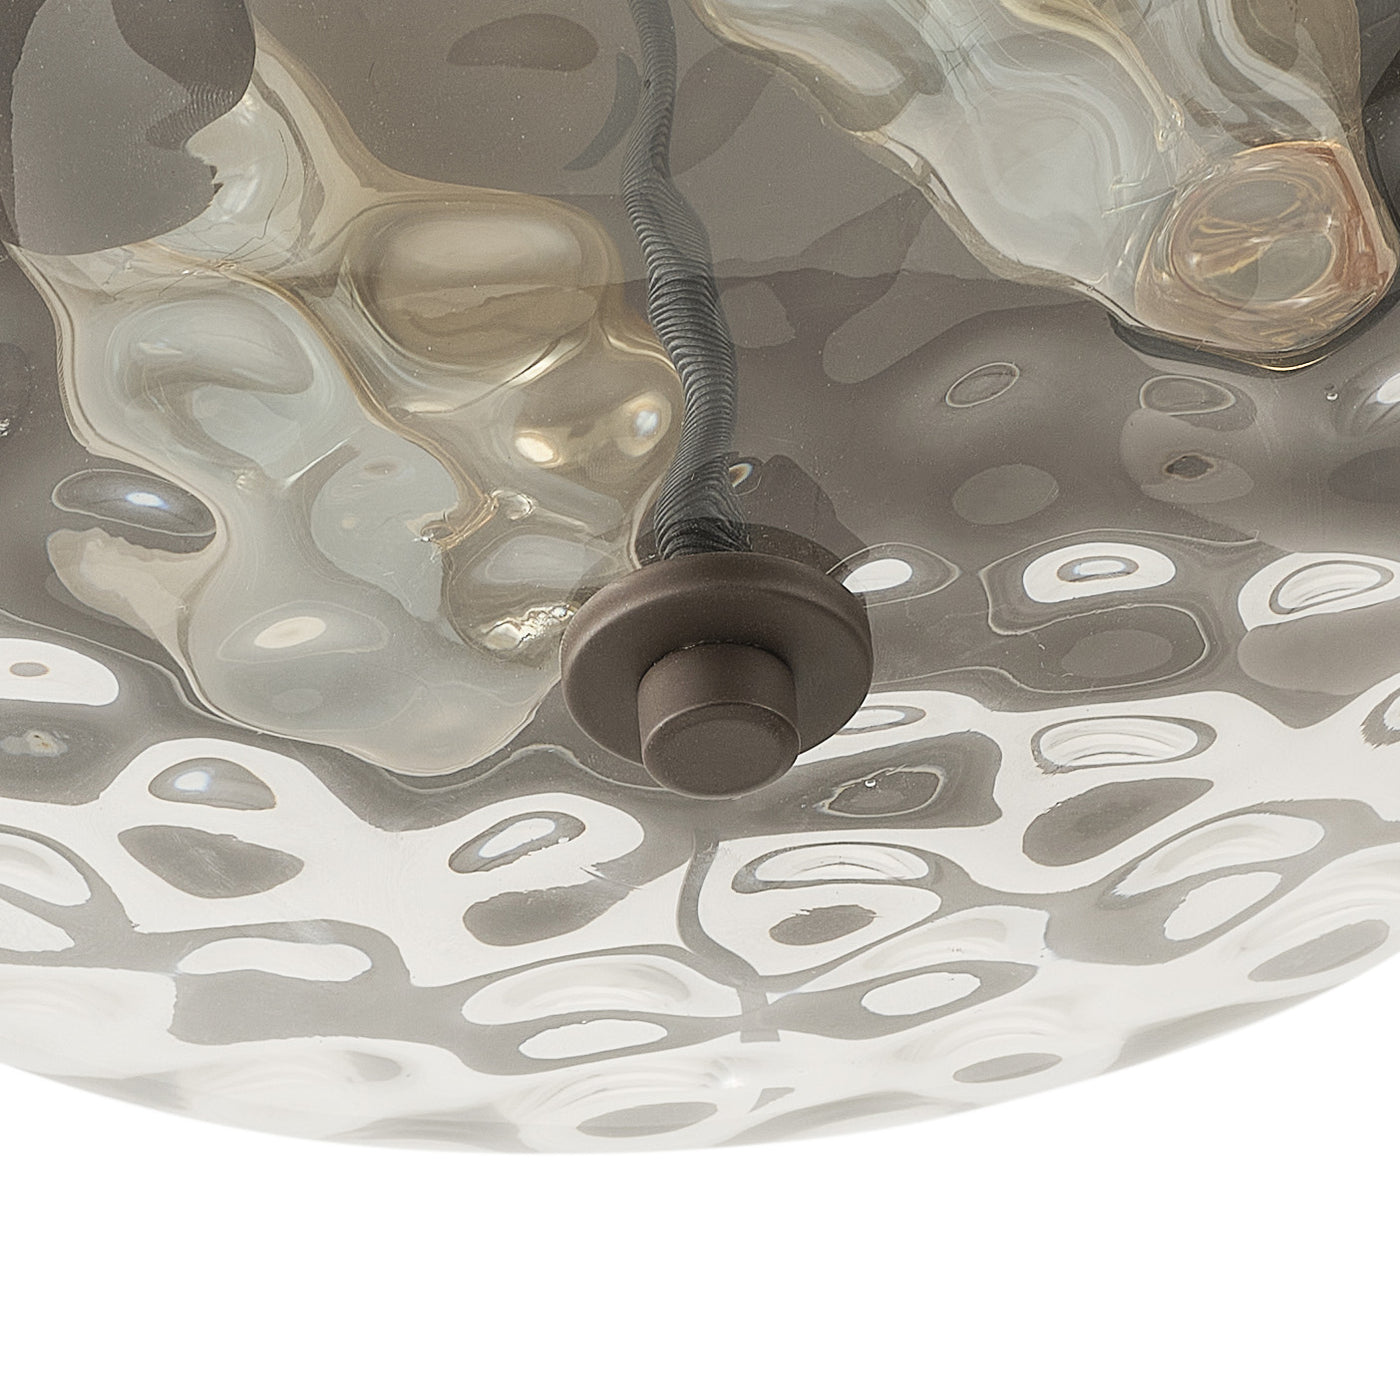 2-Lights Polka Dot Art Glass Design Flush Mount Lighting